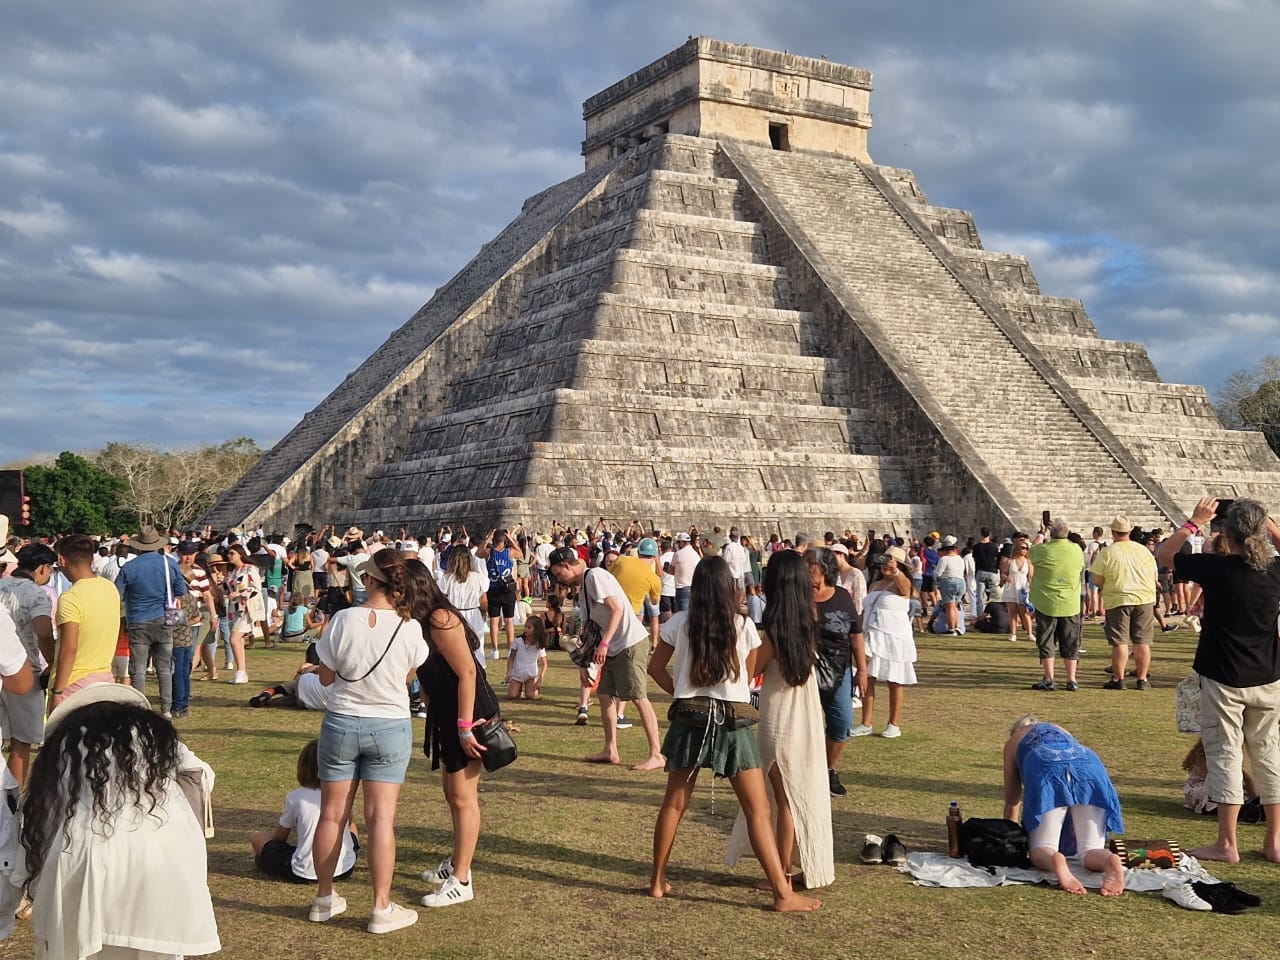 Golpea el calor a 10 turistas en Chichén Itzá durante el Solsticio de Verano